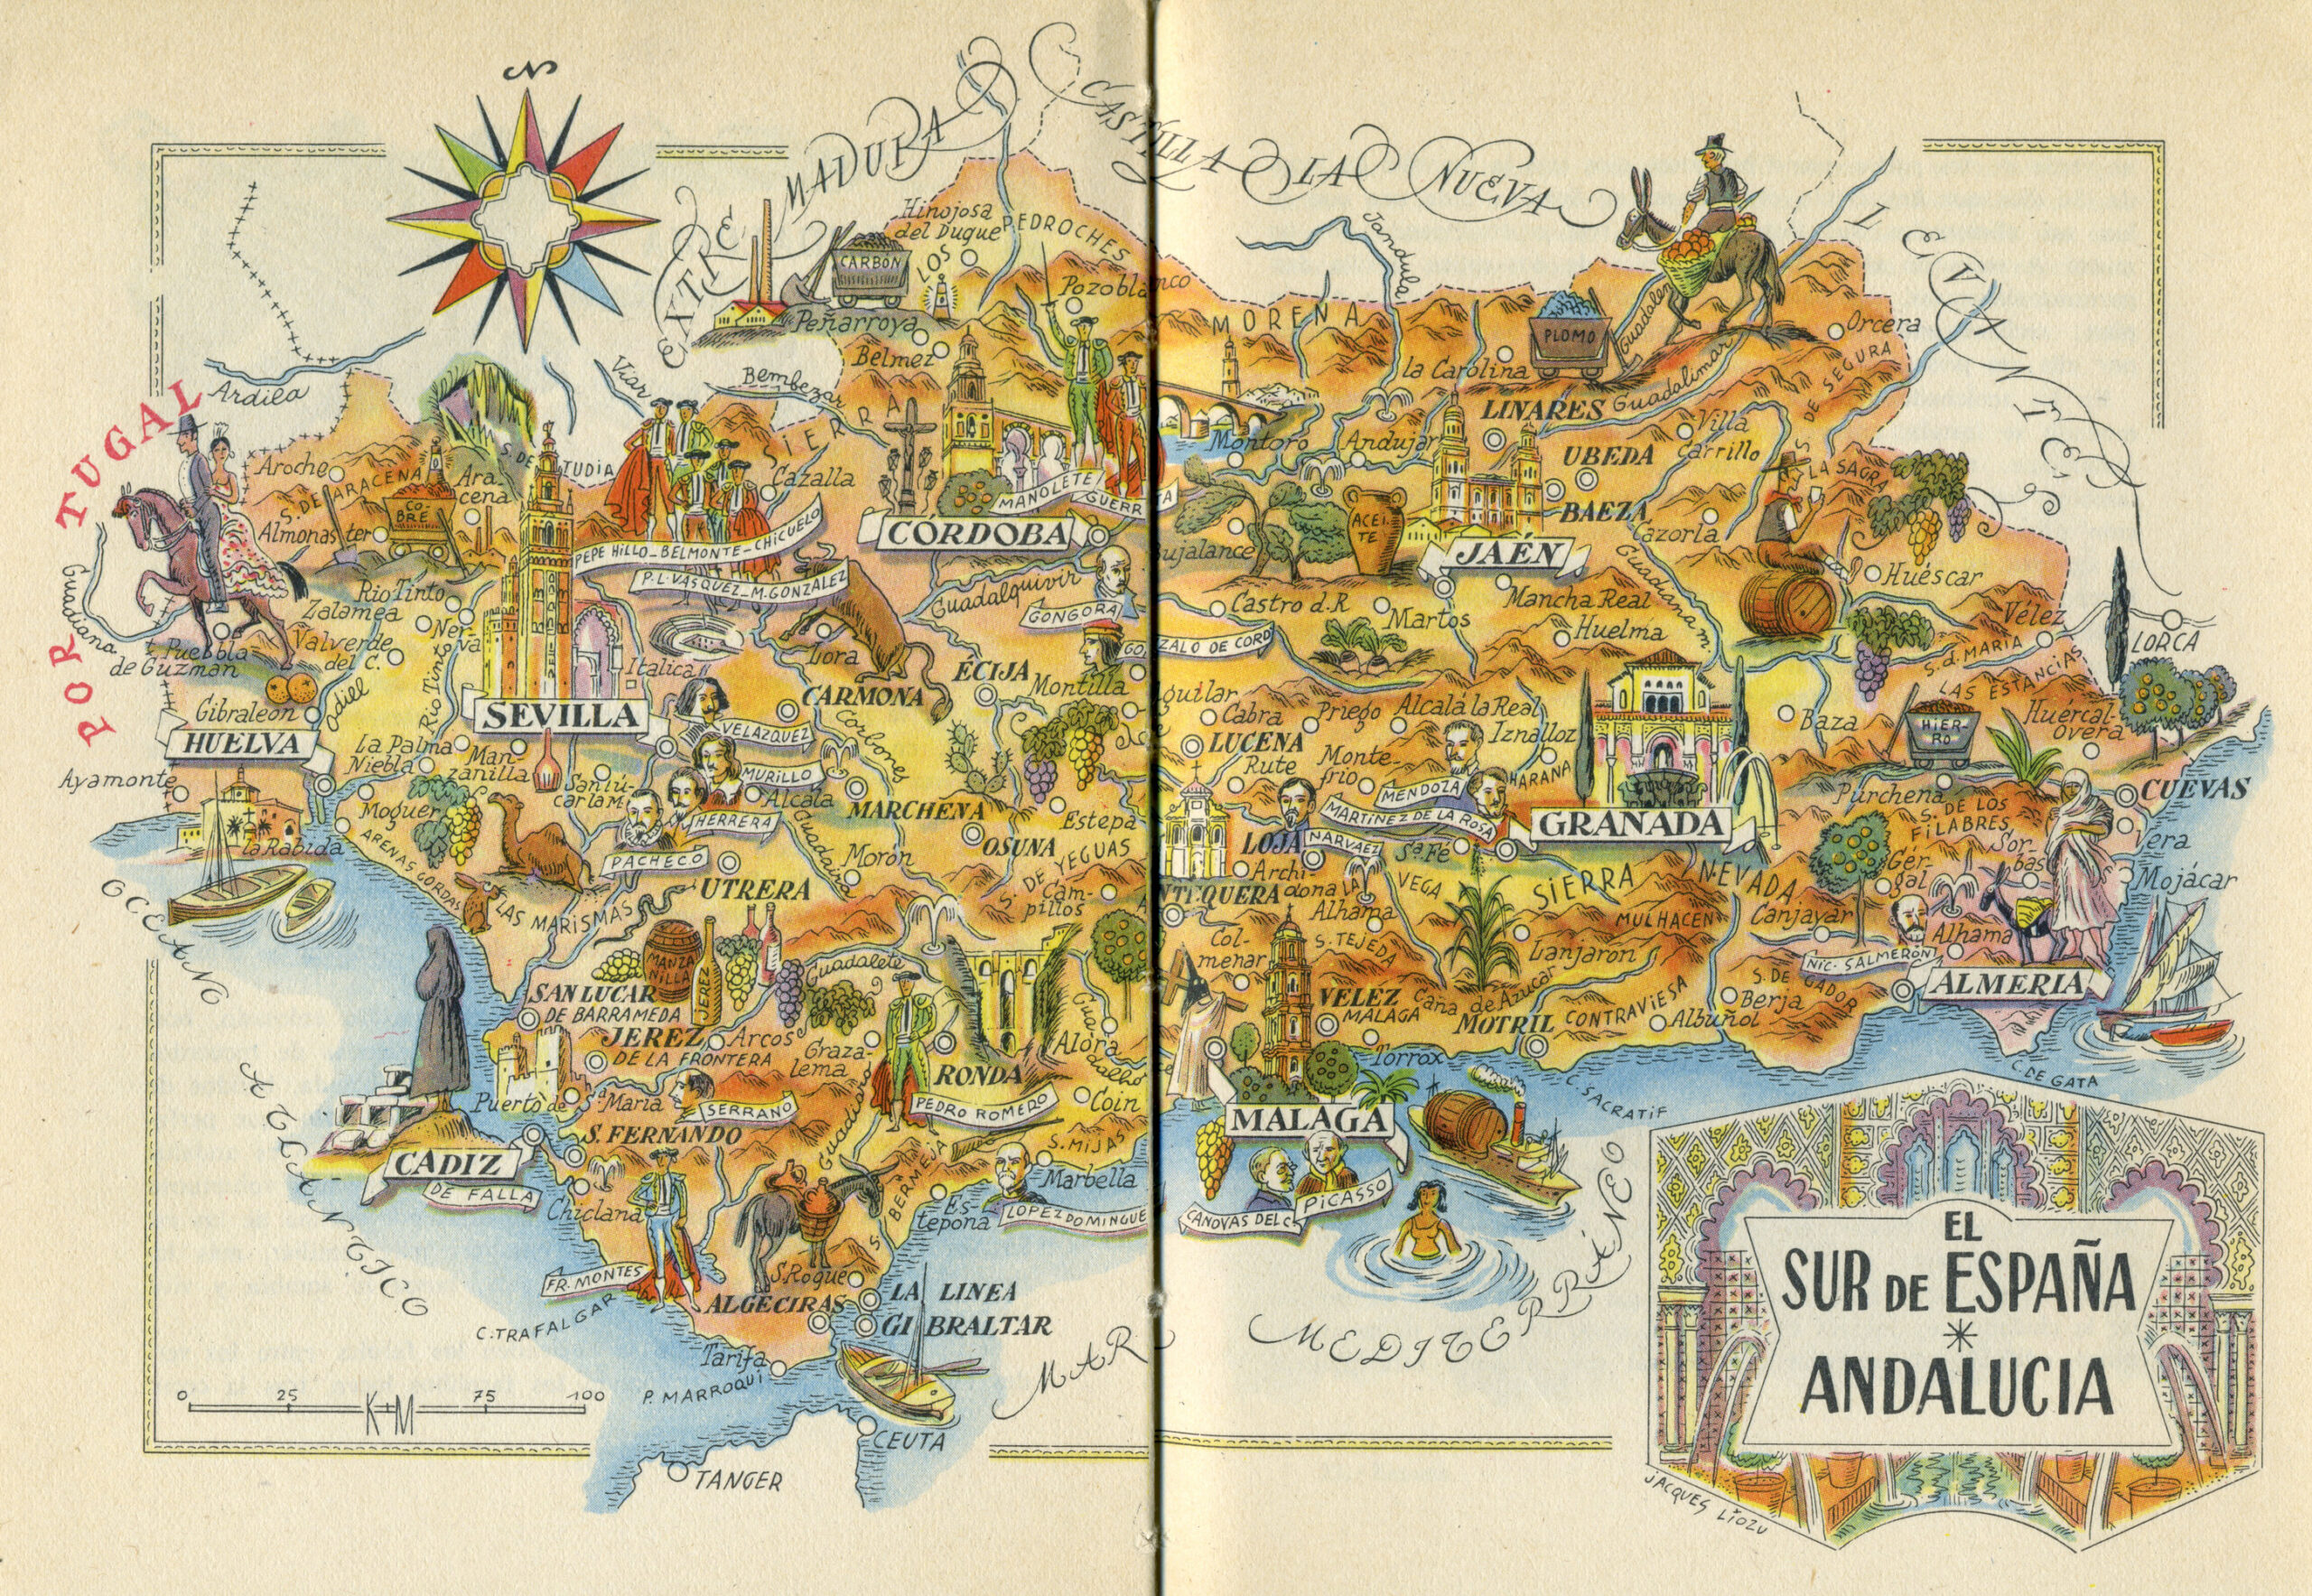 Mapa turístico del Sur de España (1953)